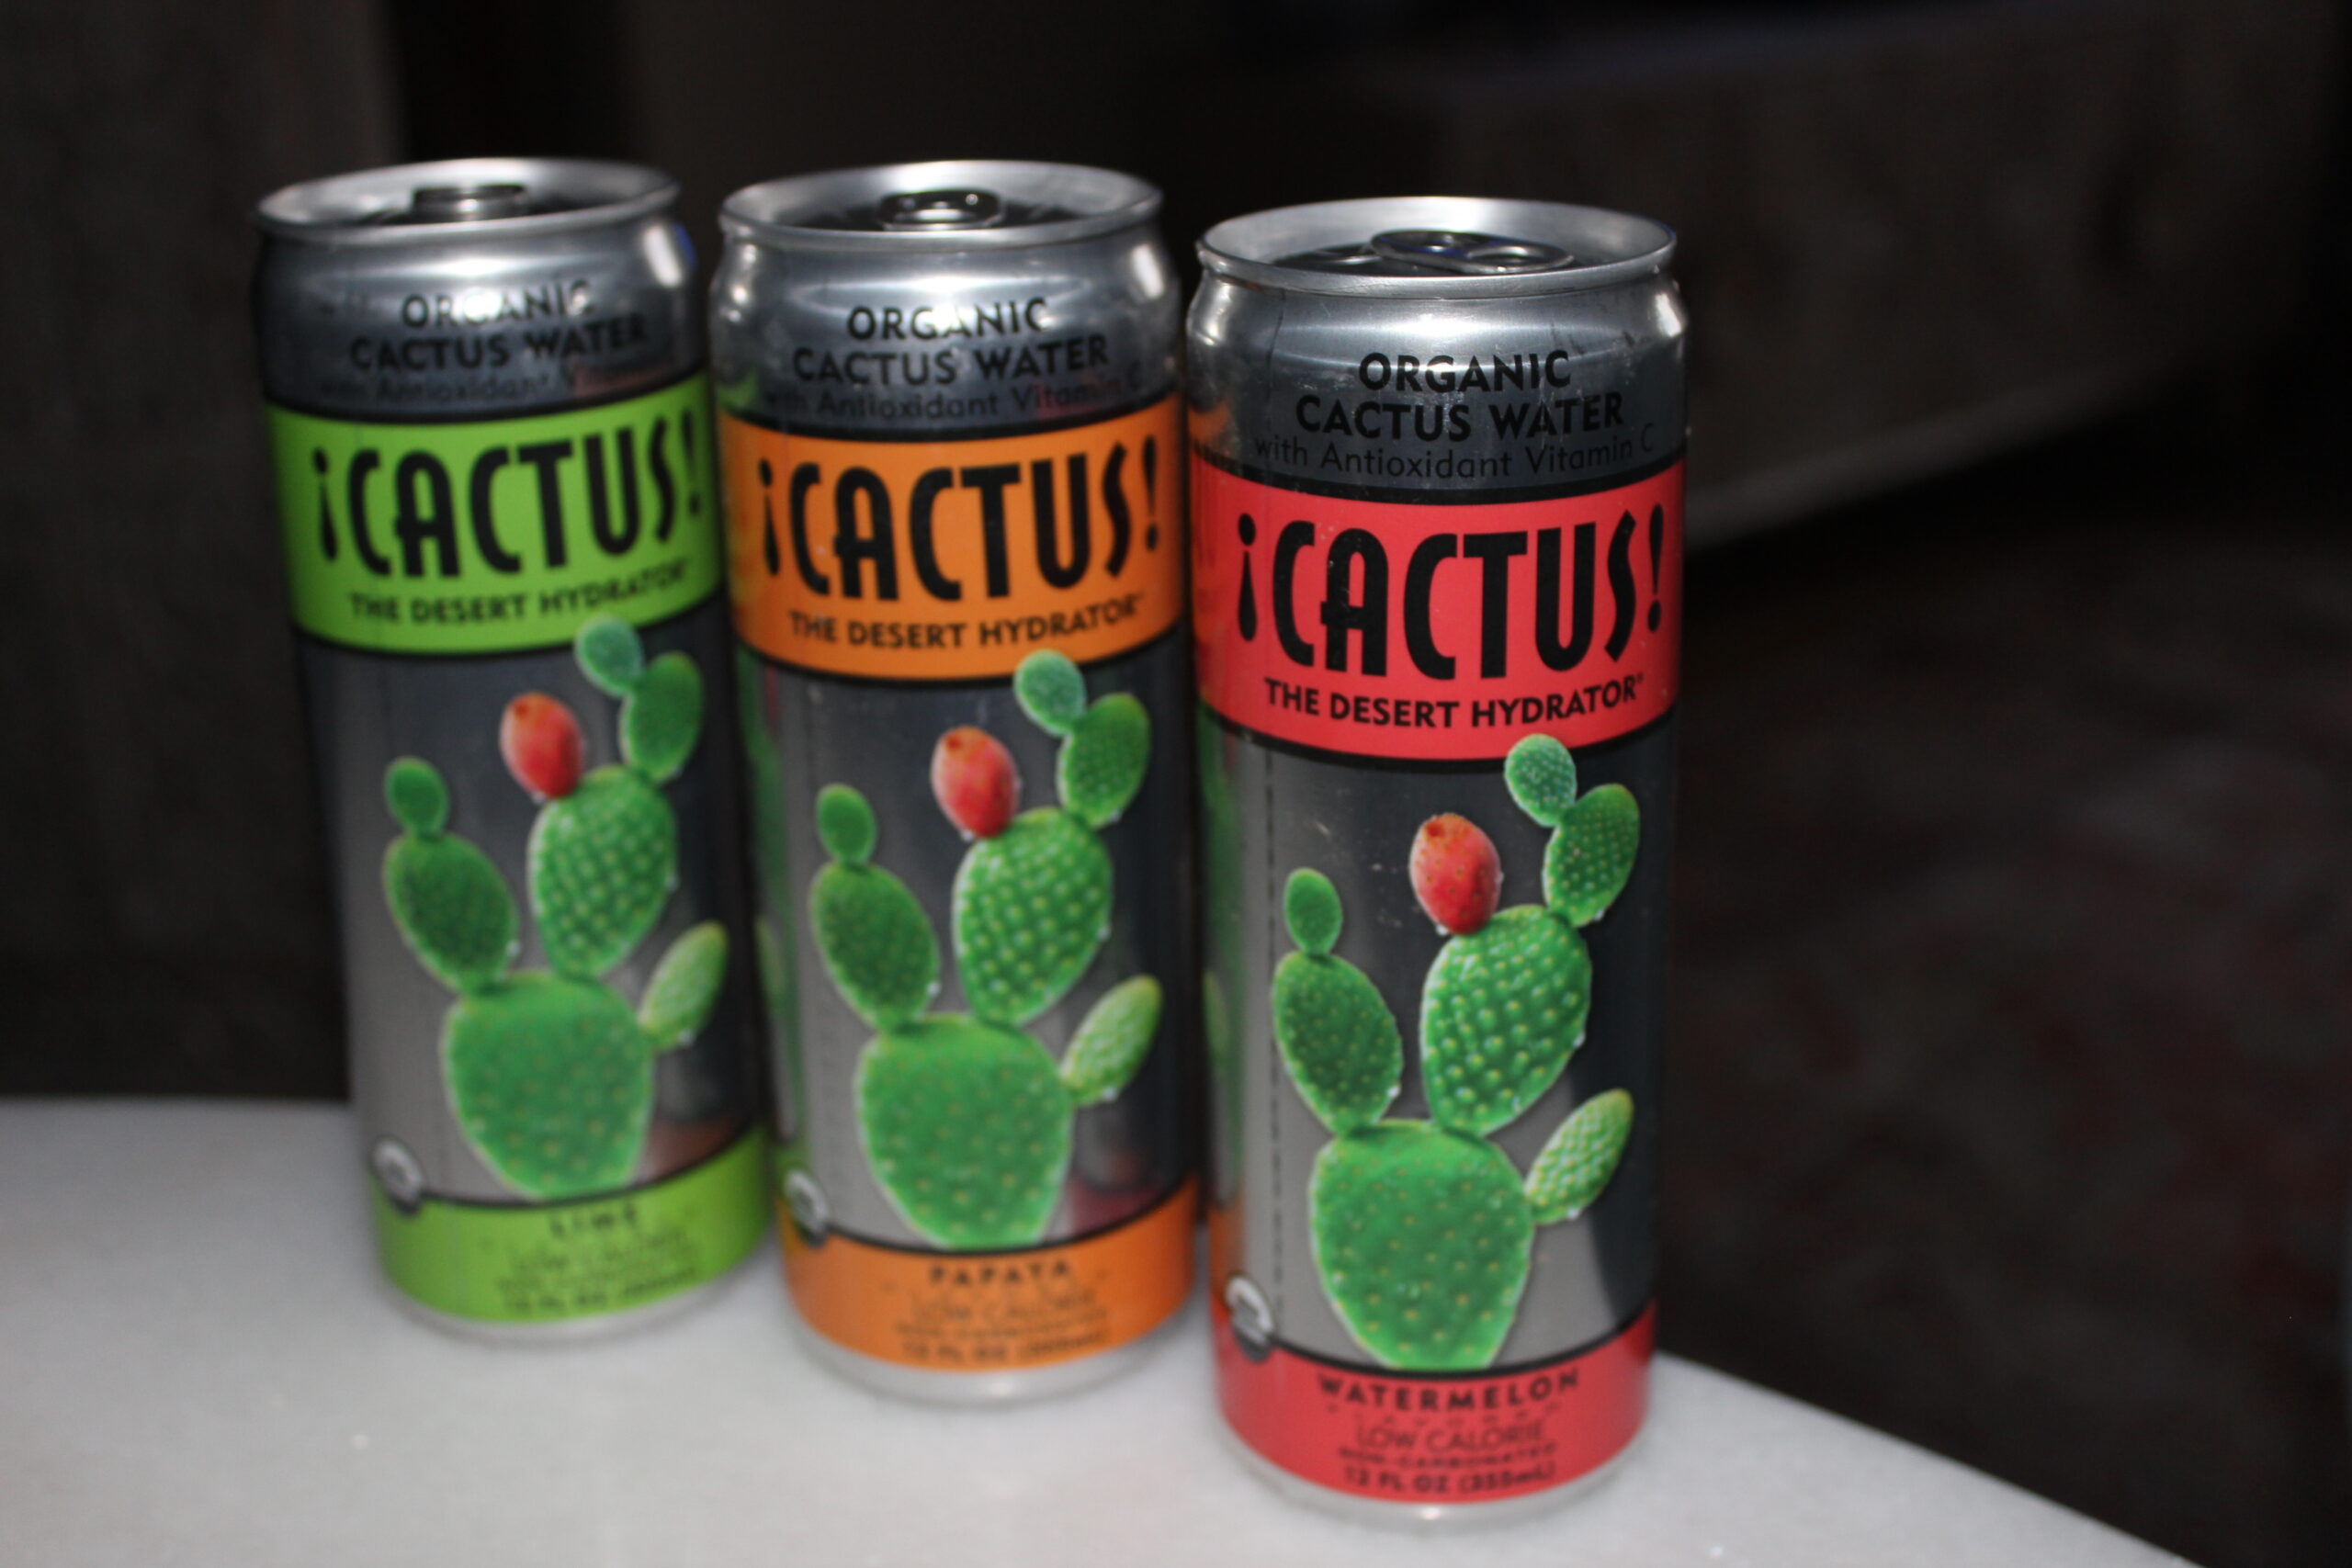 CACTUS! Organic Cactus Water